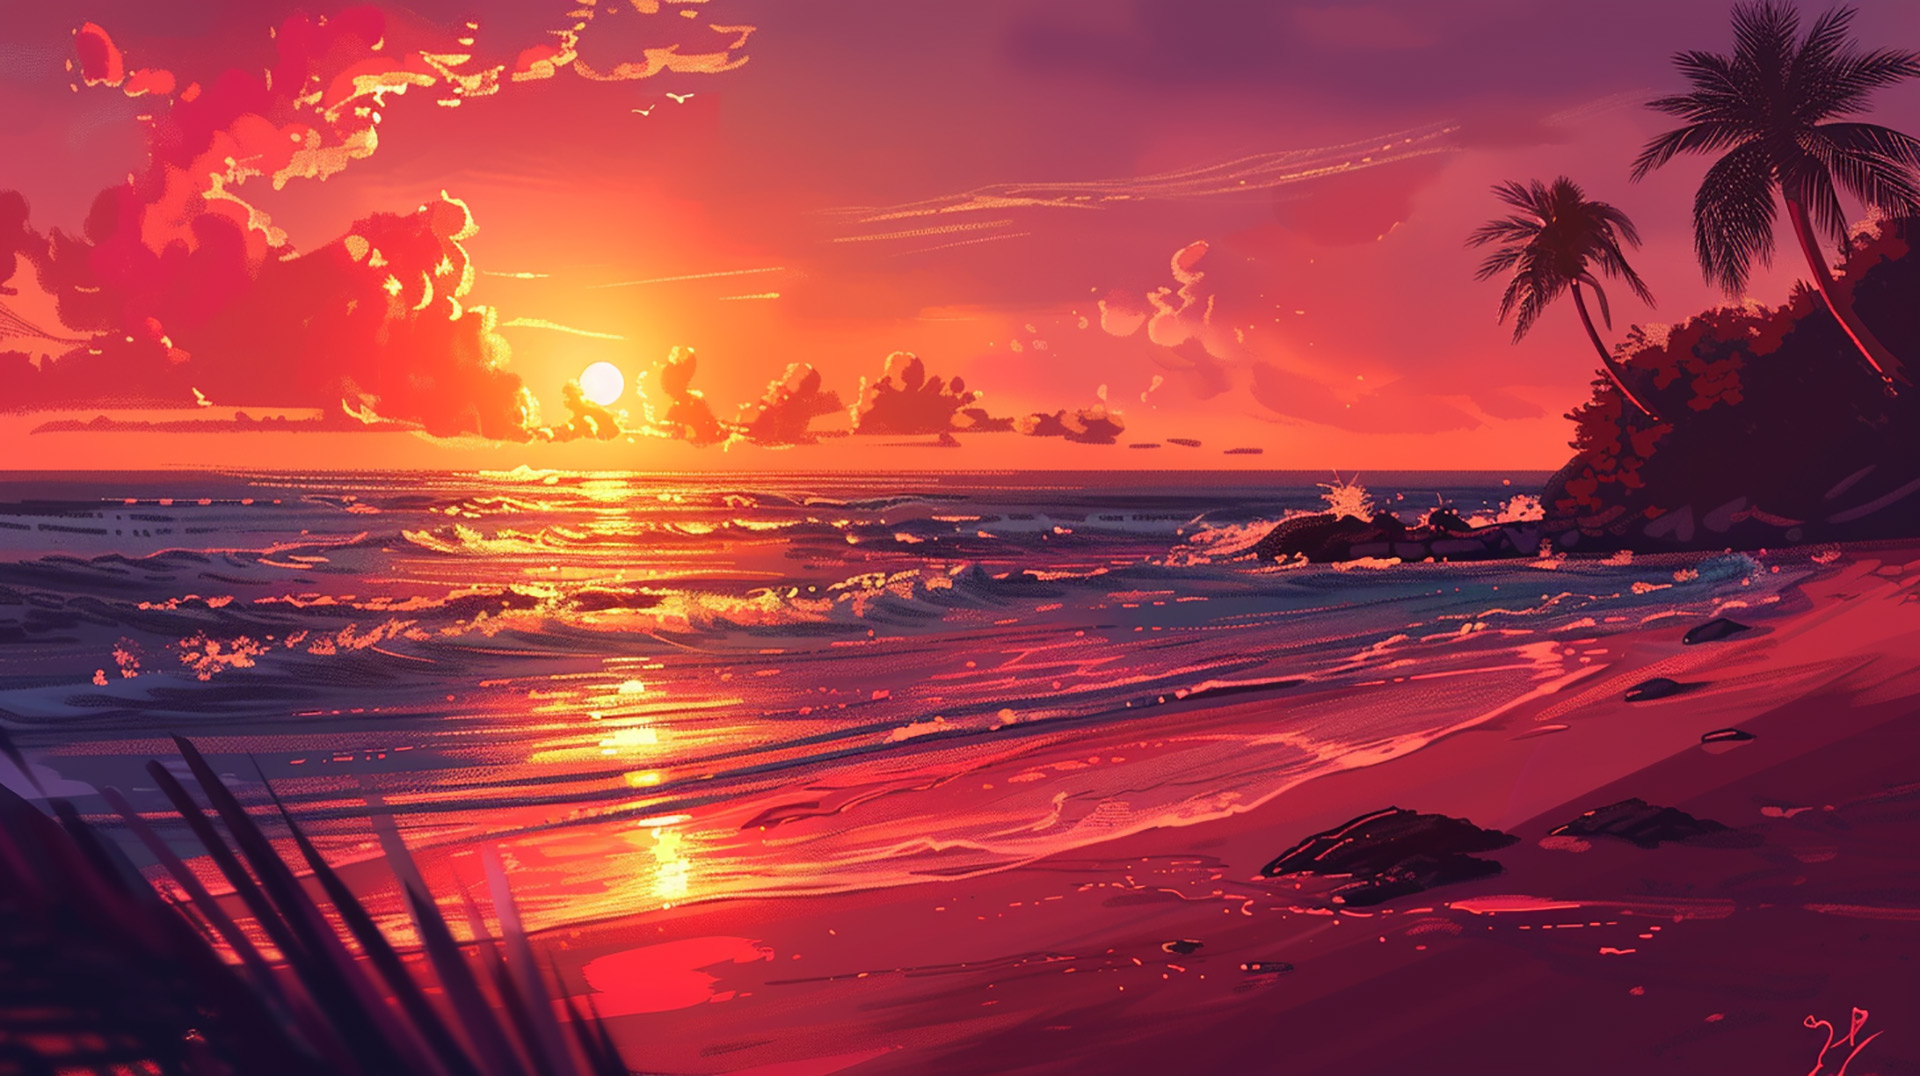 Evening Bliss: AI Beach Sunset Desktop Picture